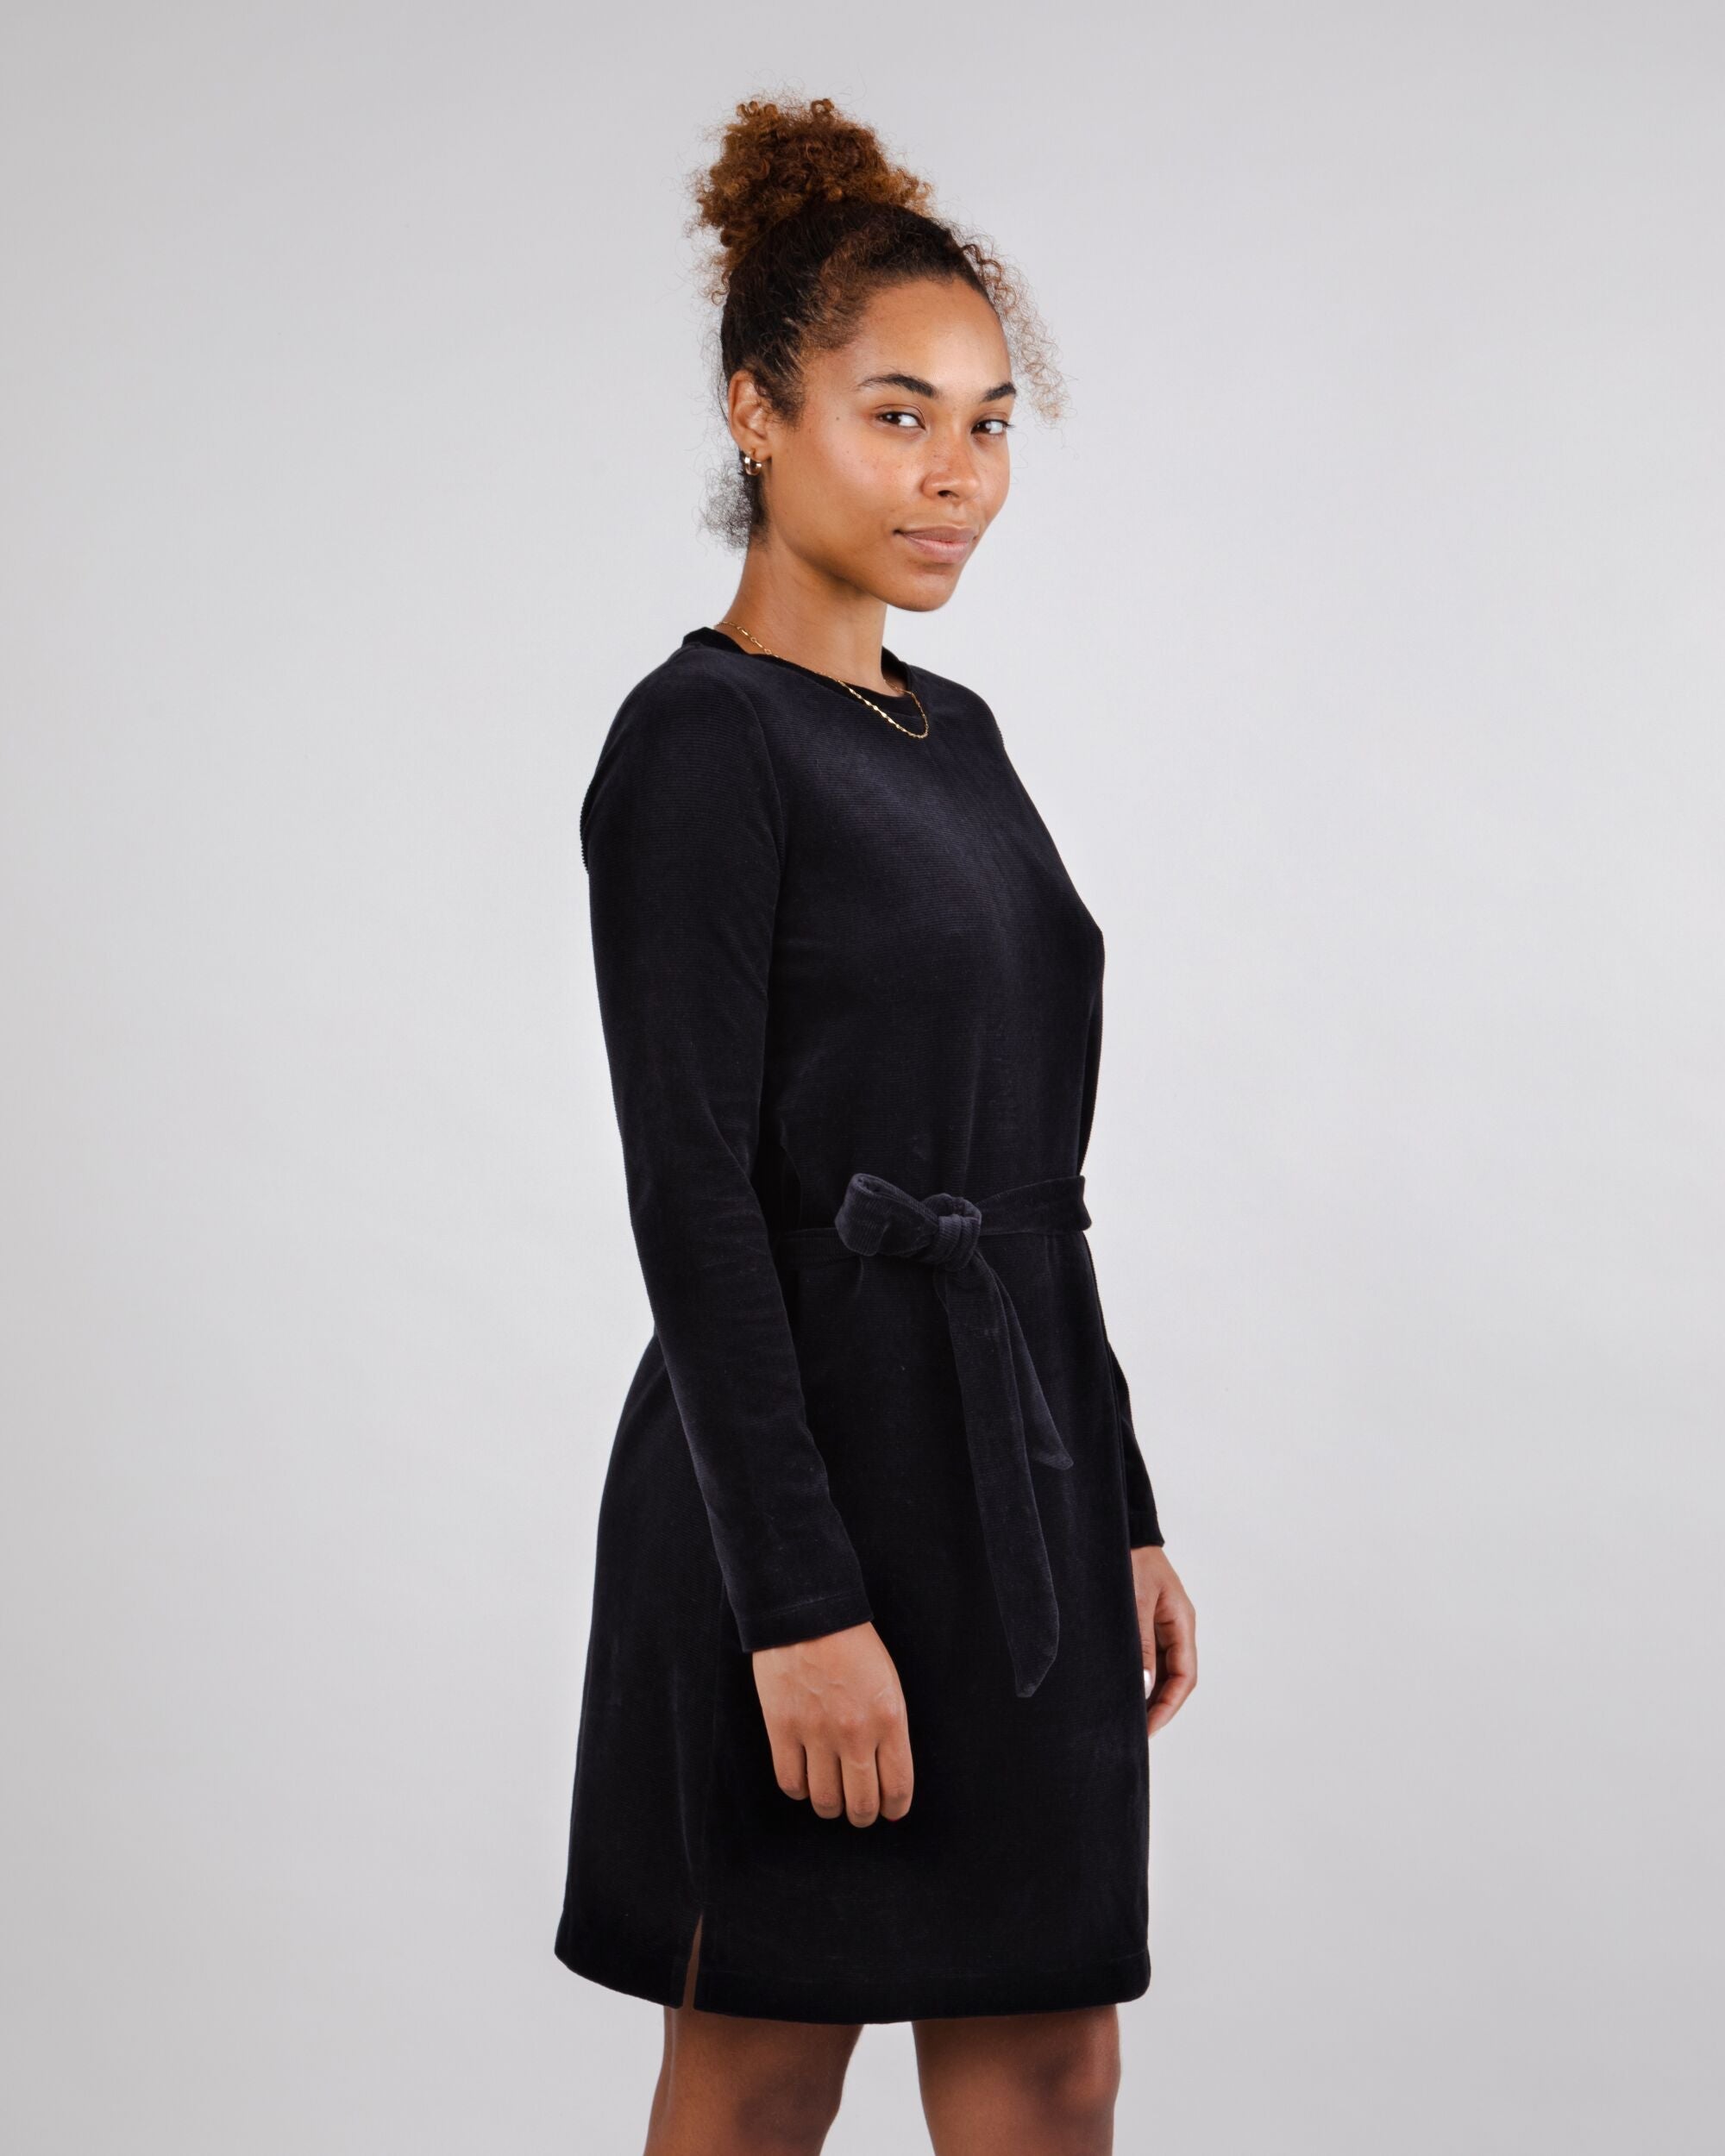 Robe avec ceinture en velours noire de Brava Fabrics